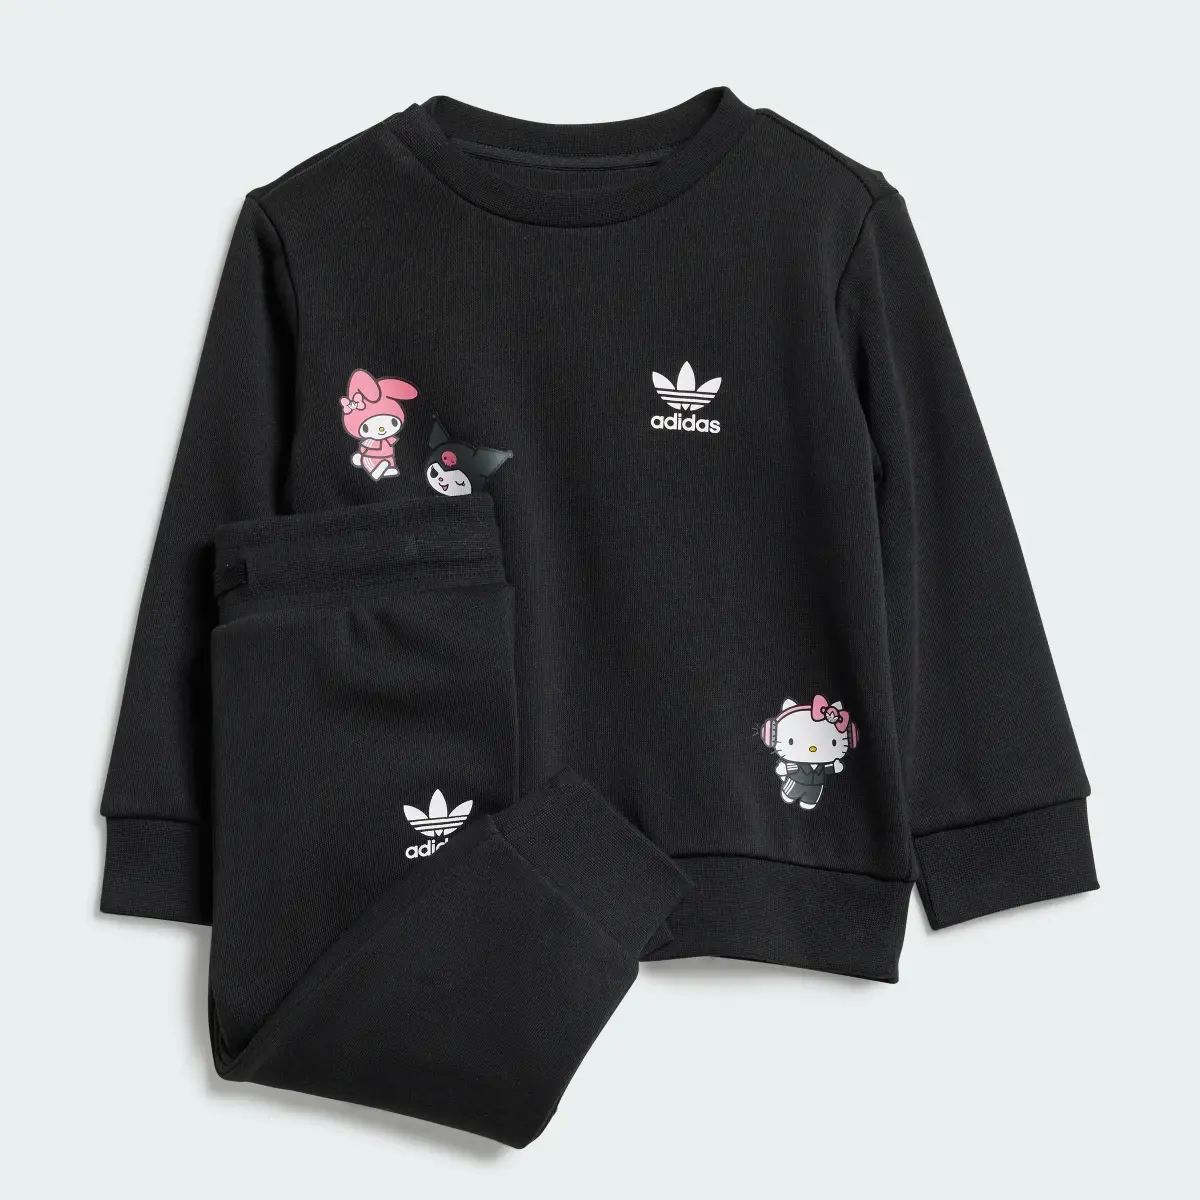 Adidas Originals x Hello Kitty Eşofman Takımı. 1